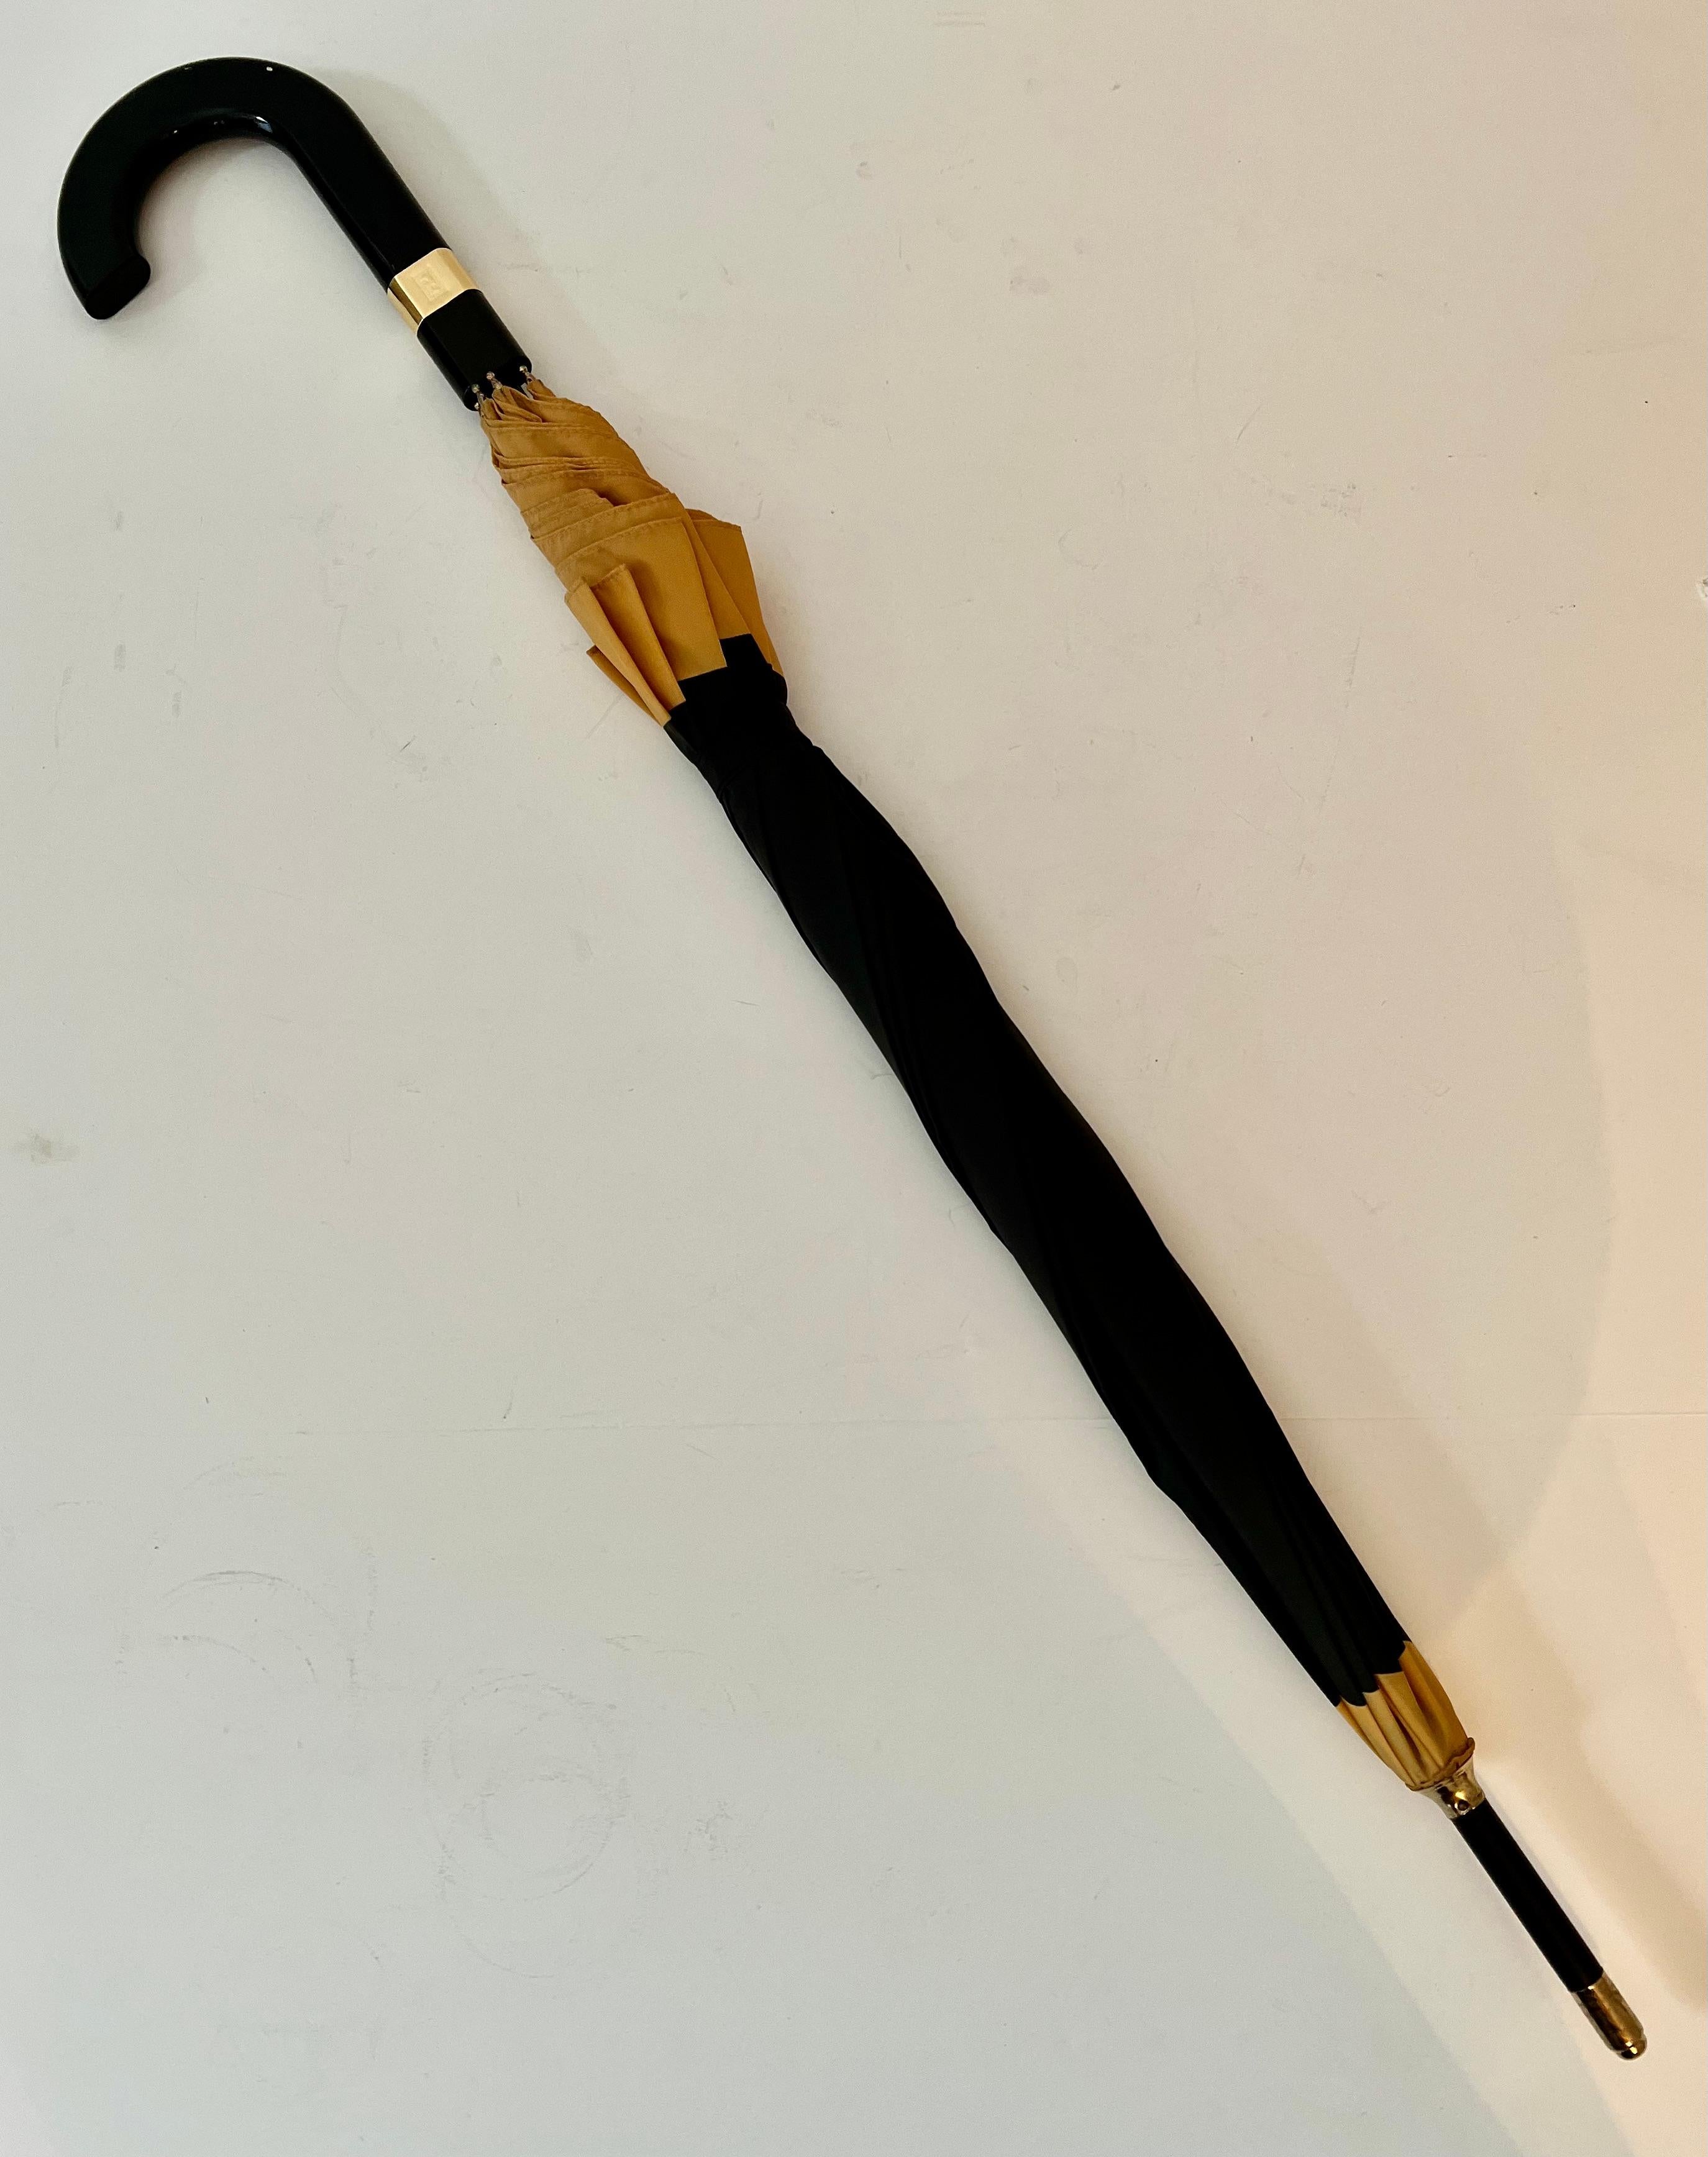 Magnifique parapluie noir et or de Fendi - signé Fendi Perfumes. En très bon état, design/One unisexe - taille réelle avec étui - poignée lisse aplatie et avec bandeau en laiton 